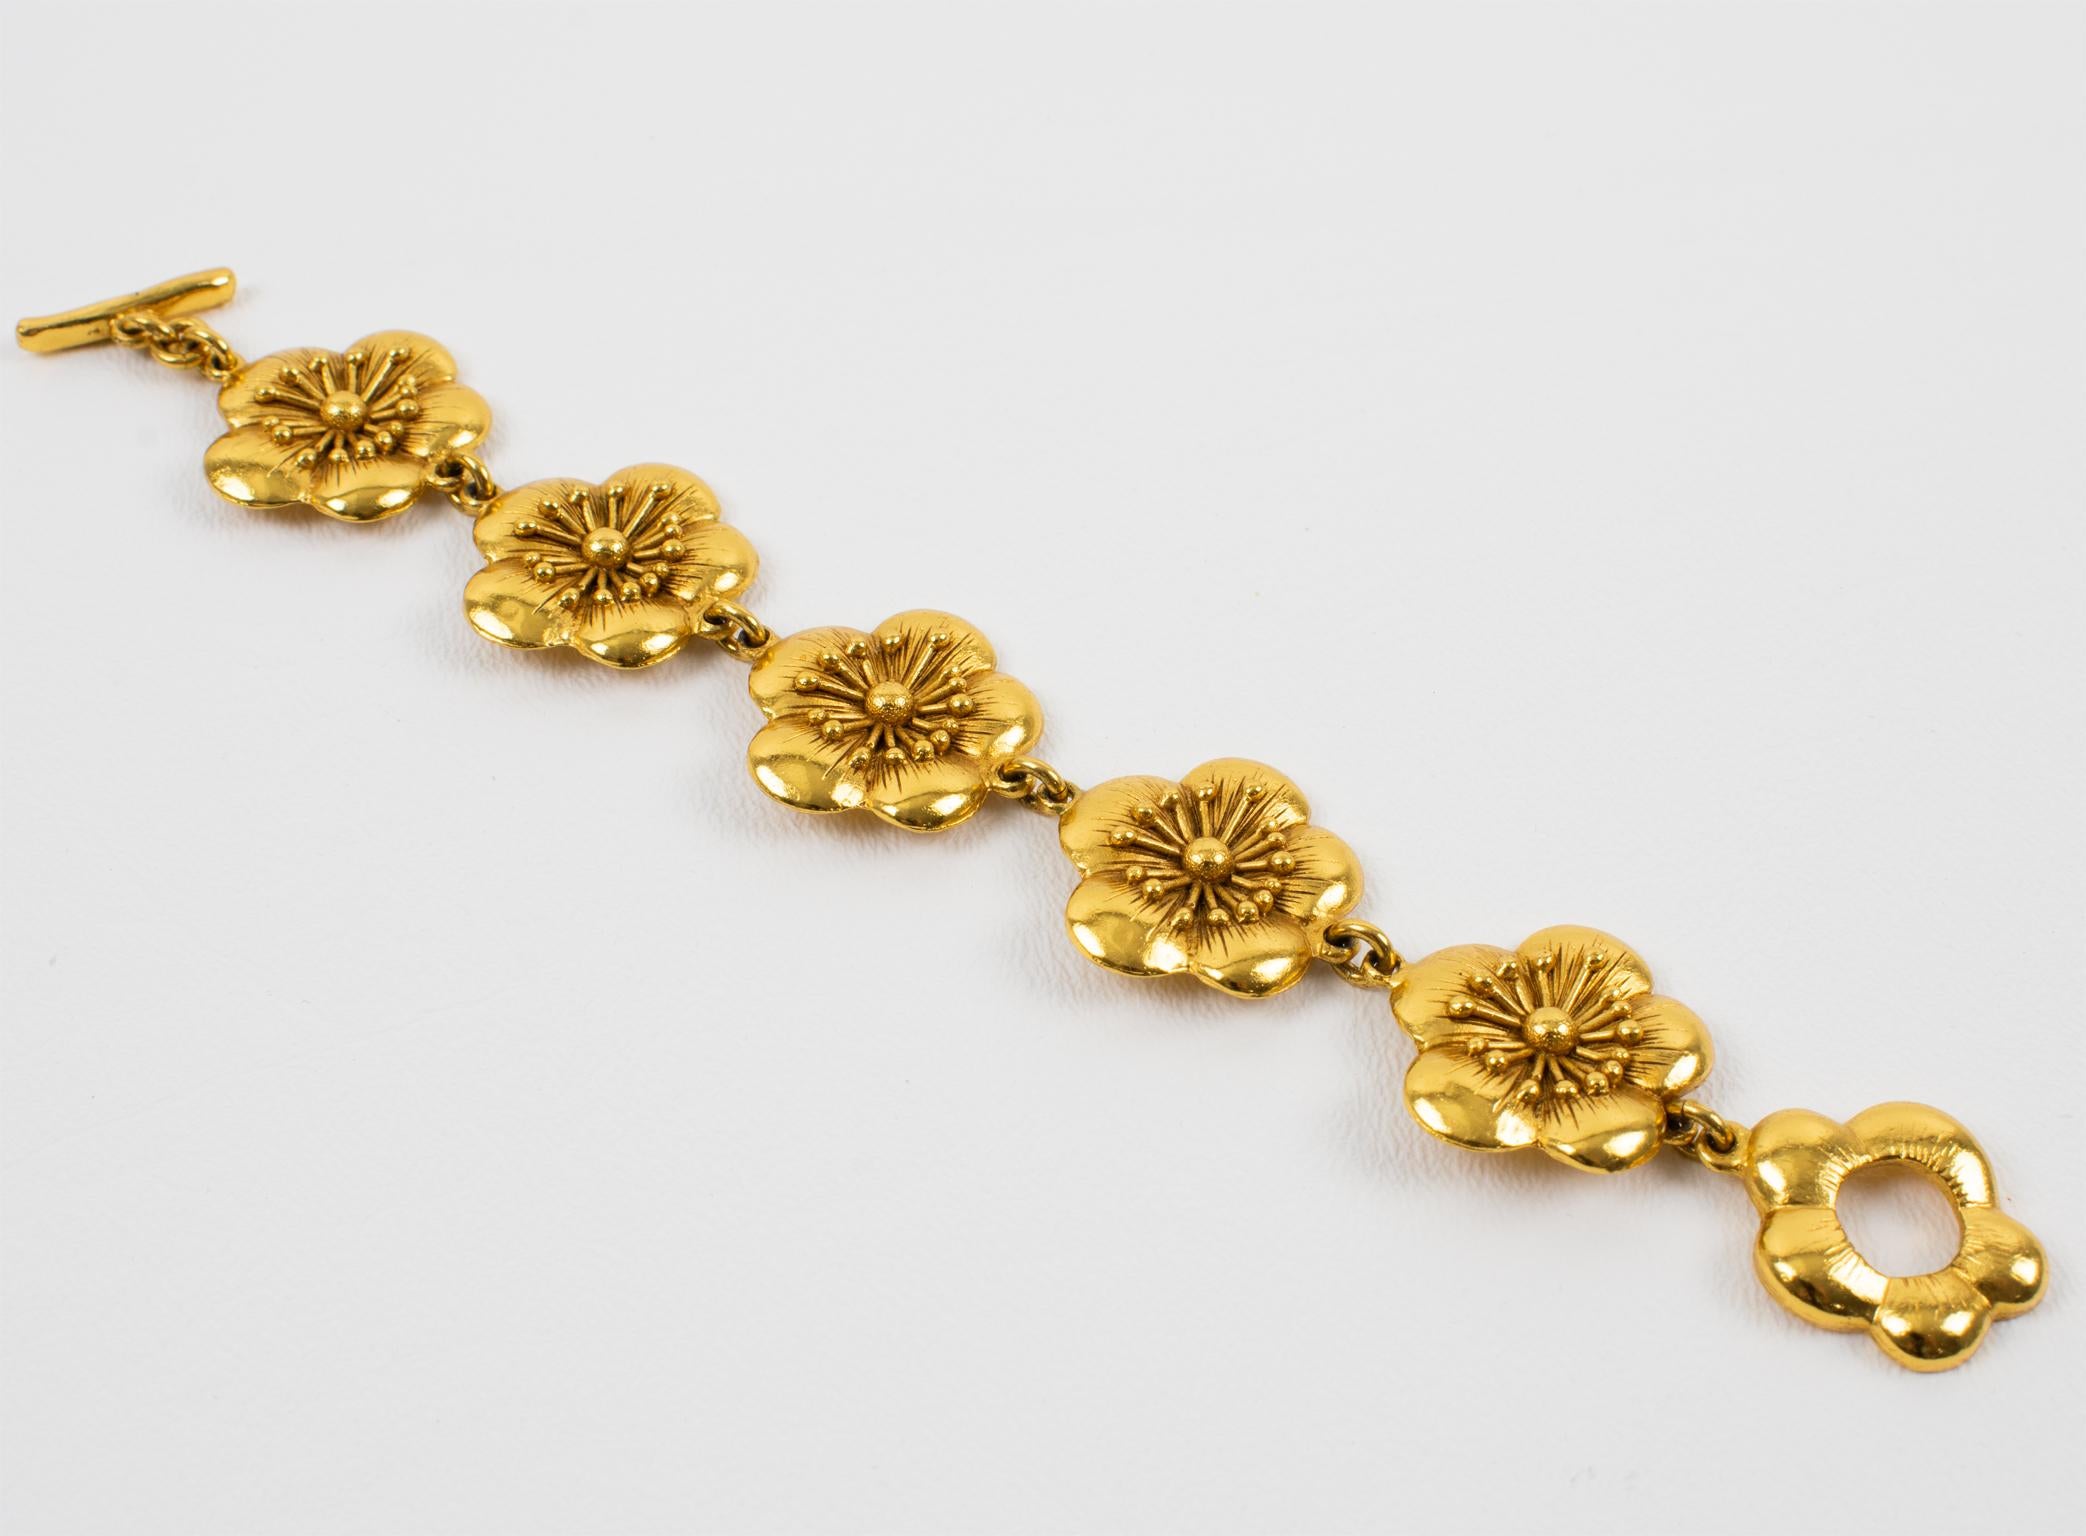 Cet envoûtant bracelet à maillons floraux de Kenzo Paris est en métal doré, tout en fleurs de cerisier sculptées et texturées. Le bracelet se ferme à l'aide d'un fermoir à bascule fleuri. La pièce est marquée en dessous sur la fermeture, et un